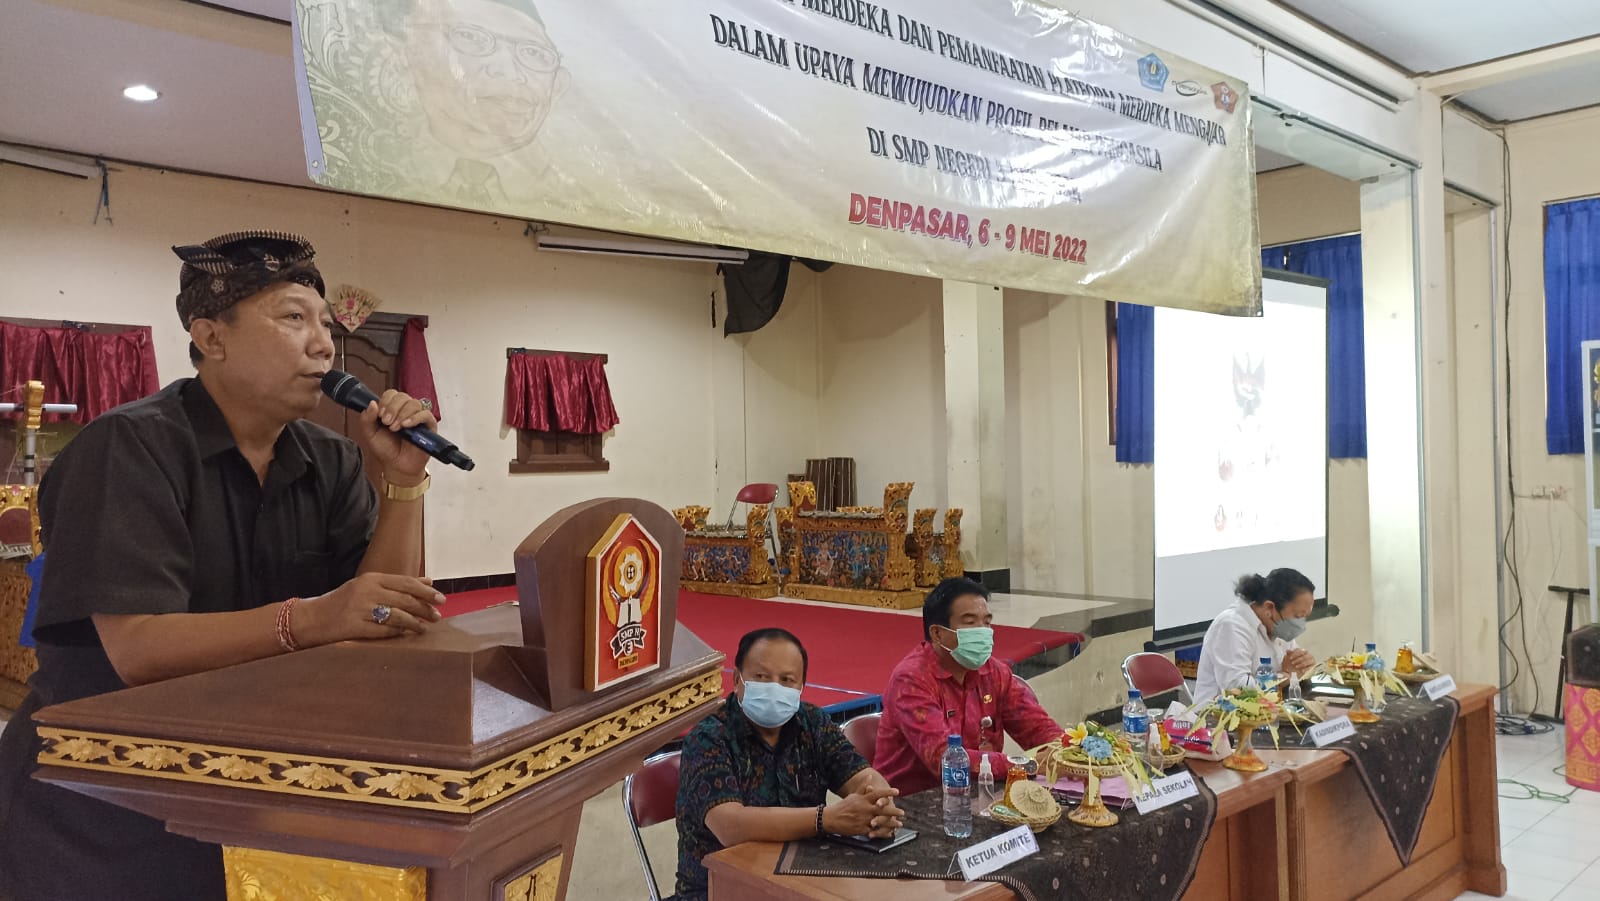 KEPALA Dinas Pendidikan Kepemudaan dan Olahraga Kota Denpasar, AA Gede Wiratama, saat membuka workshop Kurikulum Merdeka di SMPN 3 Denpasar, Jumat (6/5/2022). Foto: tra